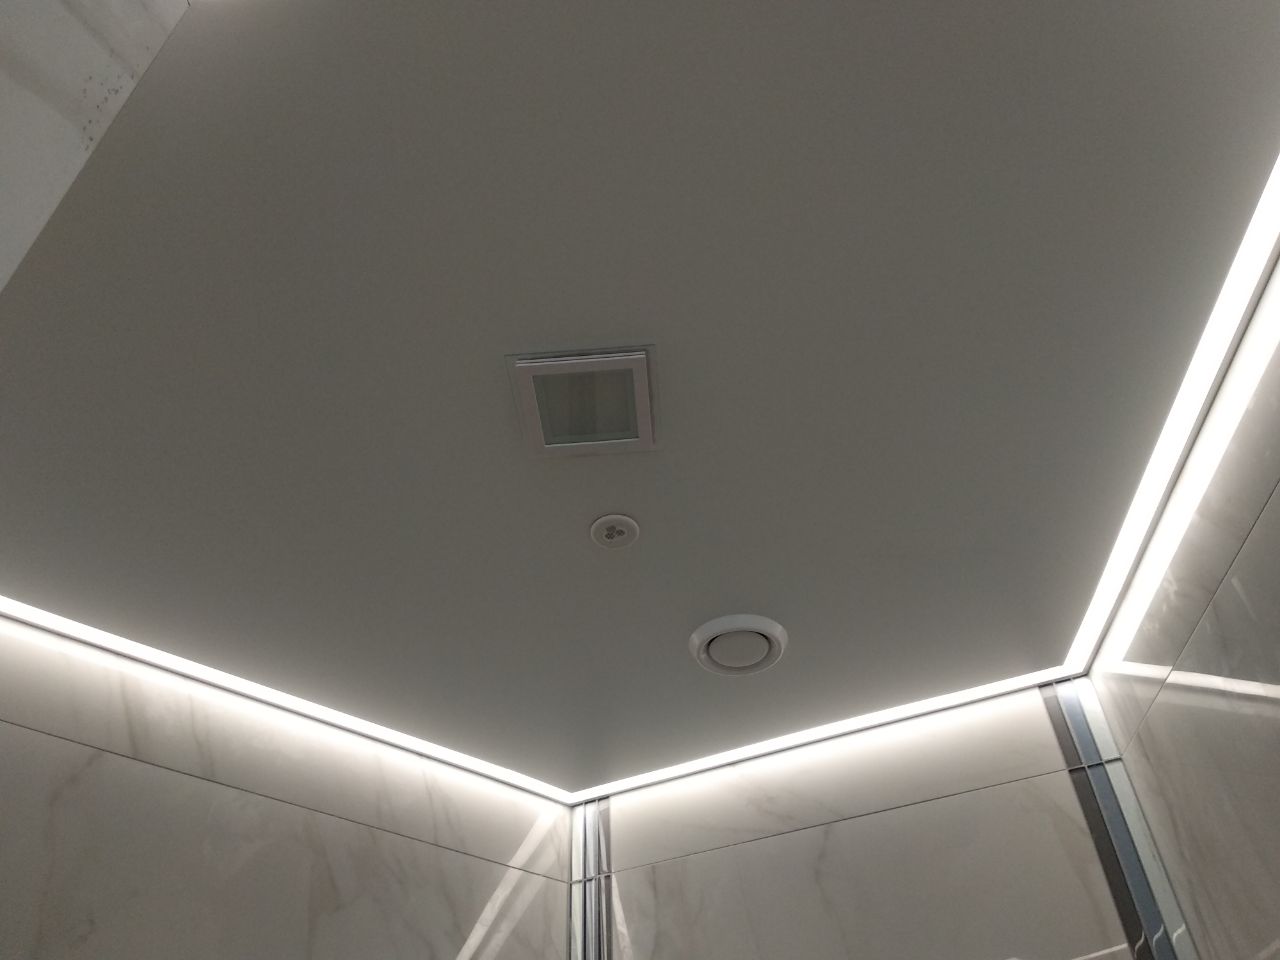 Контурная подсветка натяжного. Контурный профиль (Contour) для натяжных потолков. Контурная подсветка натяжного потолка. Натяжные потолки с подсветкой. Контурная подсветка натяжного потолка по периметру.